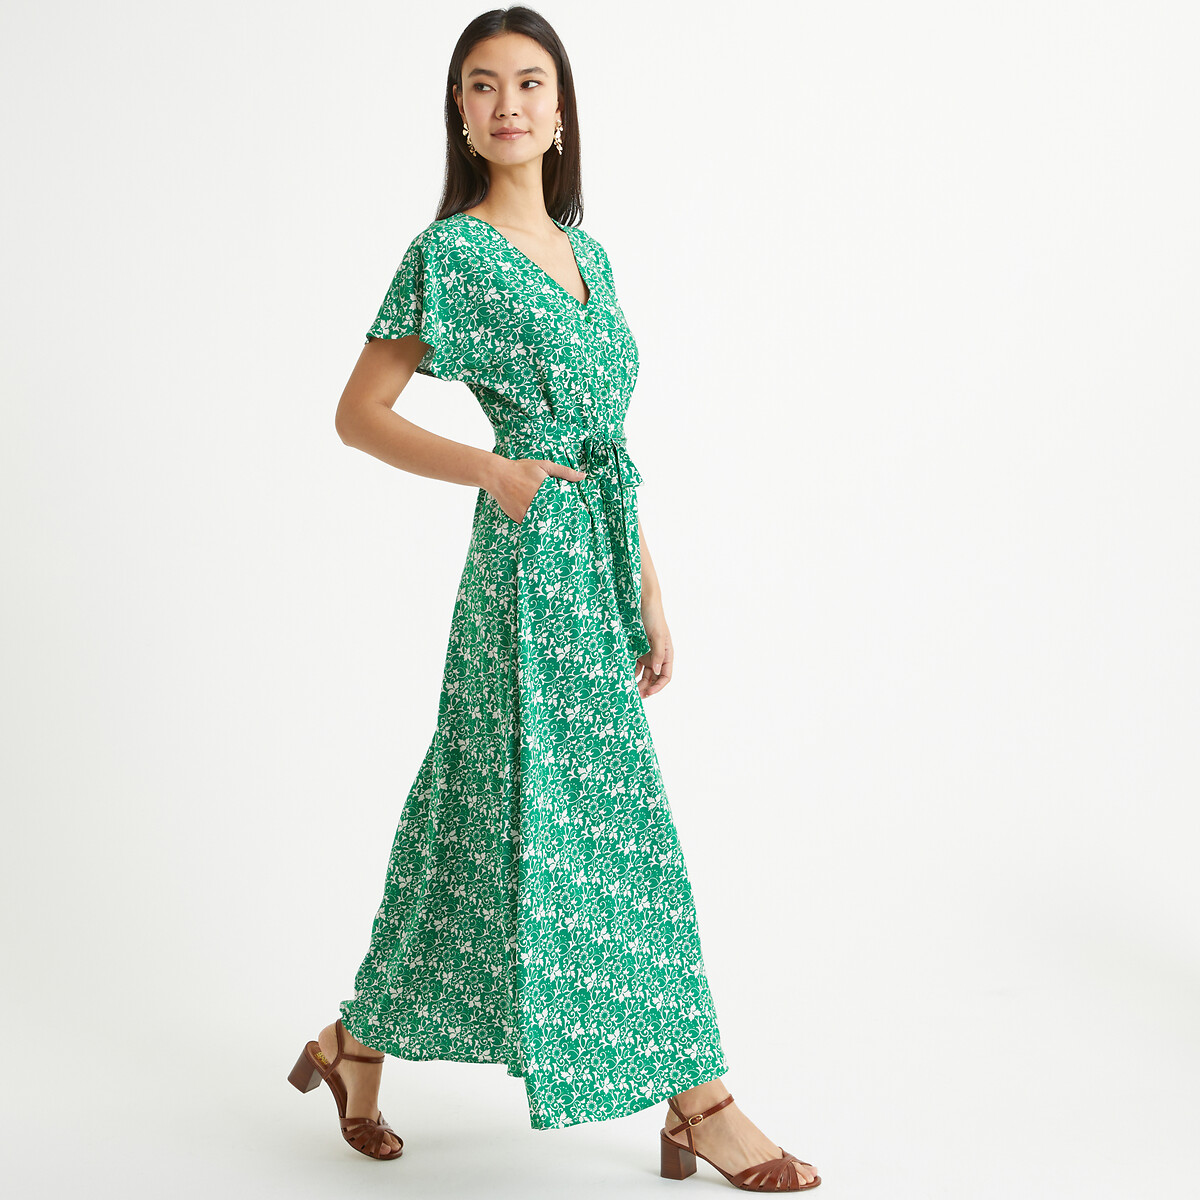 Платье длинное расклешенное с цветочным принтом 58 зеленый